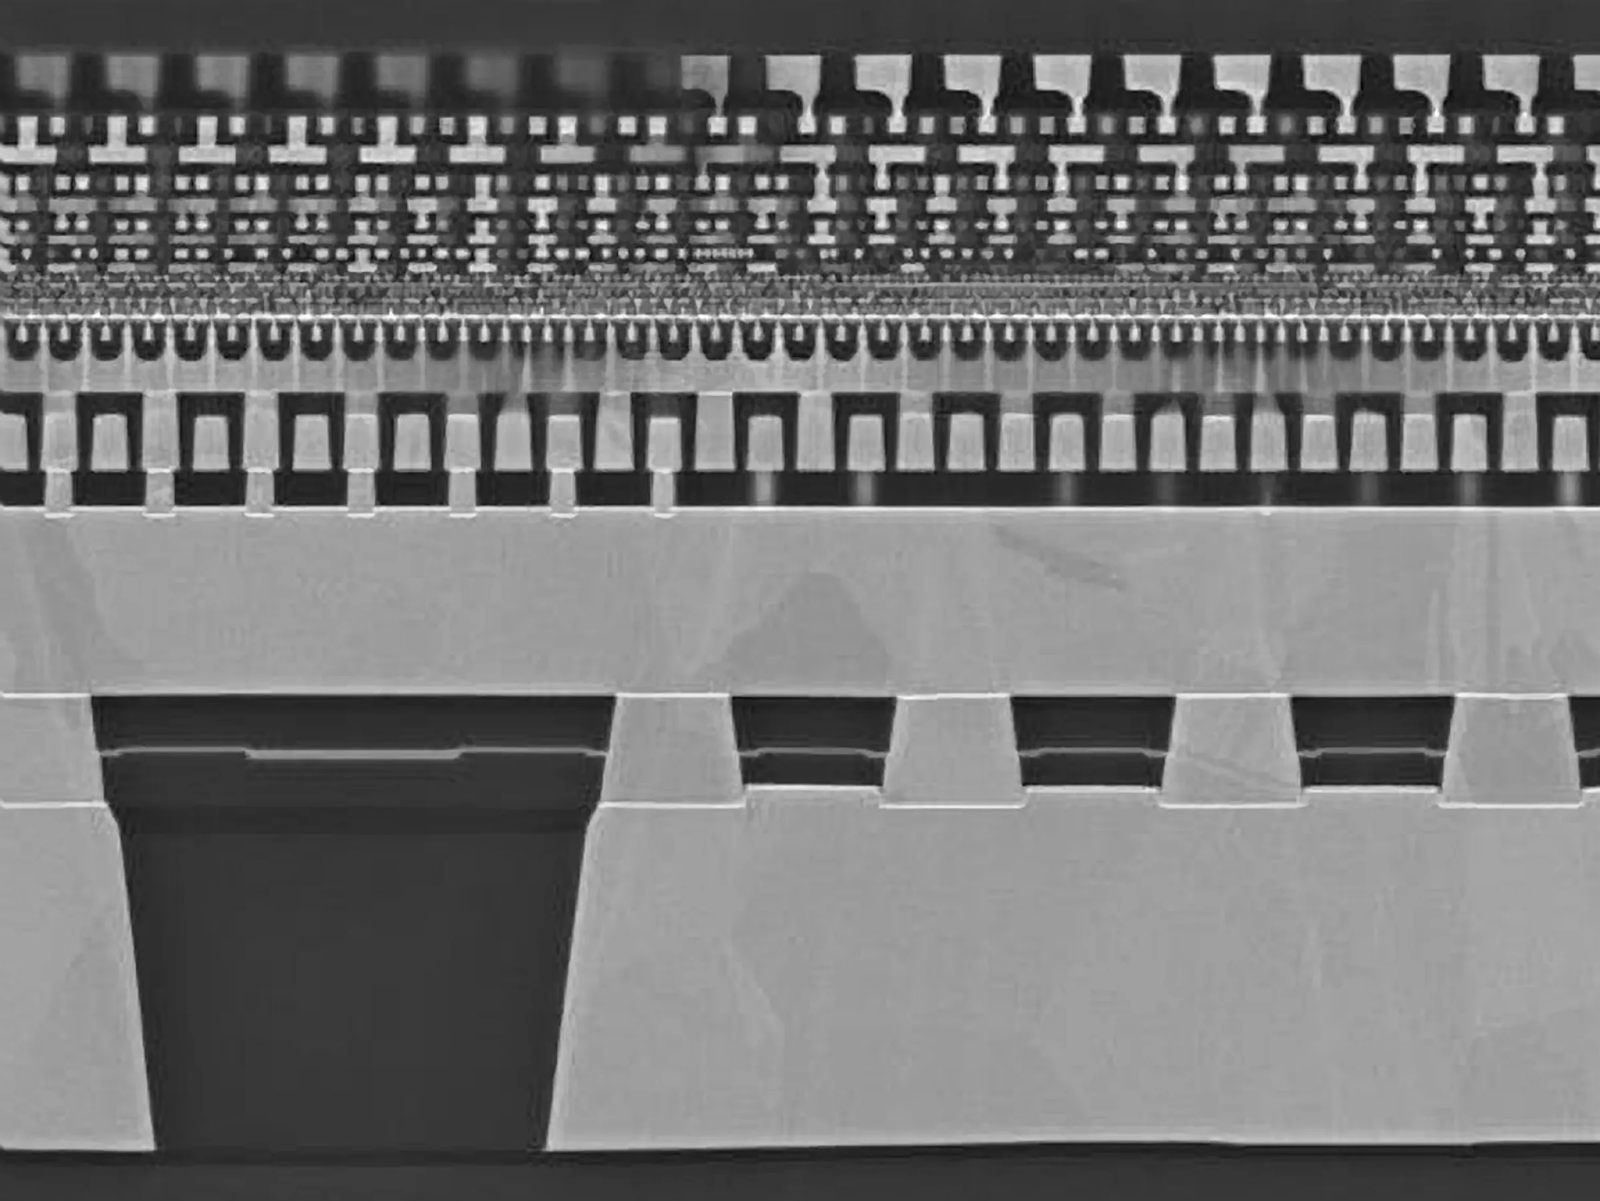 Демонстрационный чип Power Via компании Intel показывает, что в будущих чипах останется очень мало кремния. Тонкая кремниевая часть [центральная белая линия] содержит все транзисторы. Под ними расположены межсоединения, обеспечивающие питание, а над ними — межсоединения, передающие данные. Источник: INTEL